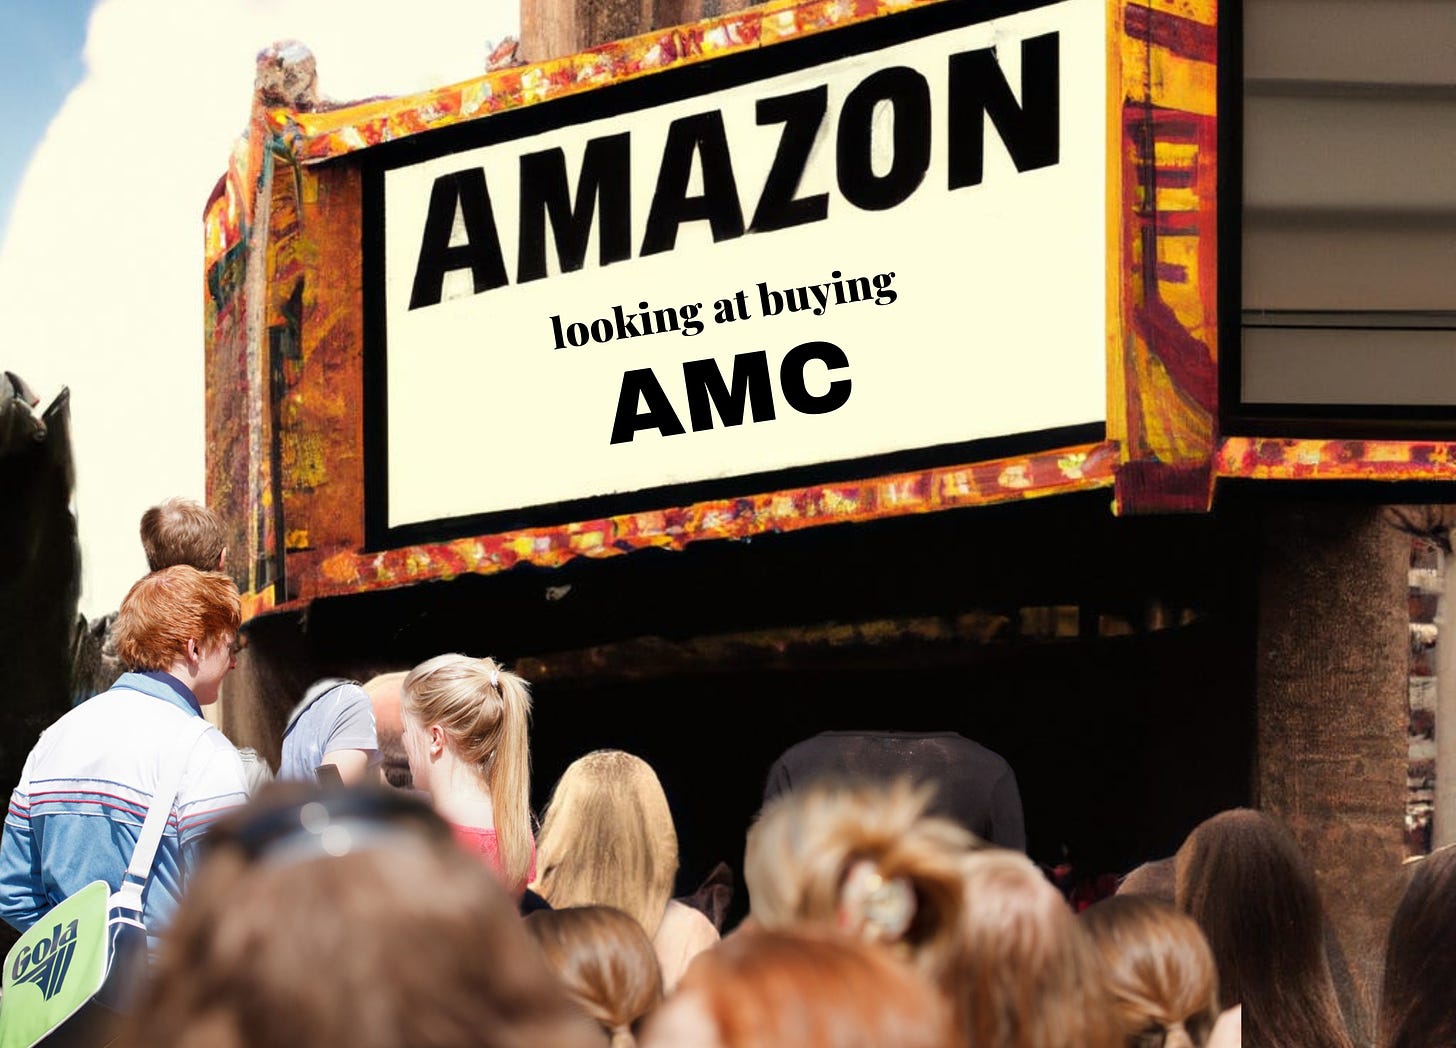 Amazon, AMC, Bezos, Walmart, Theater, Box Office